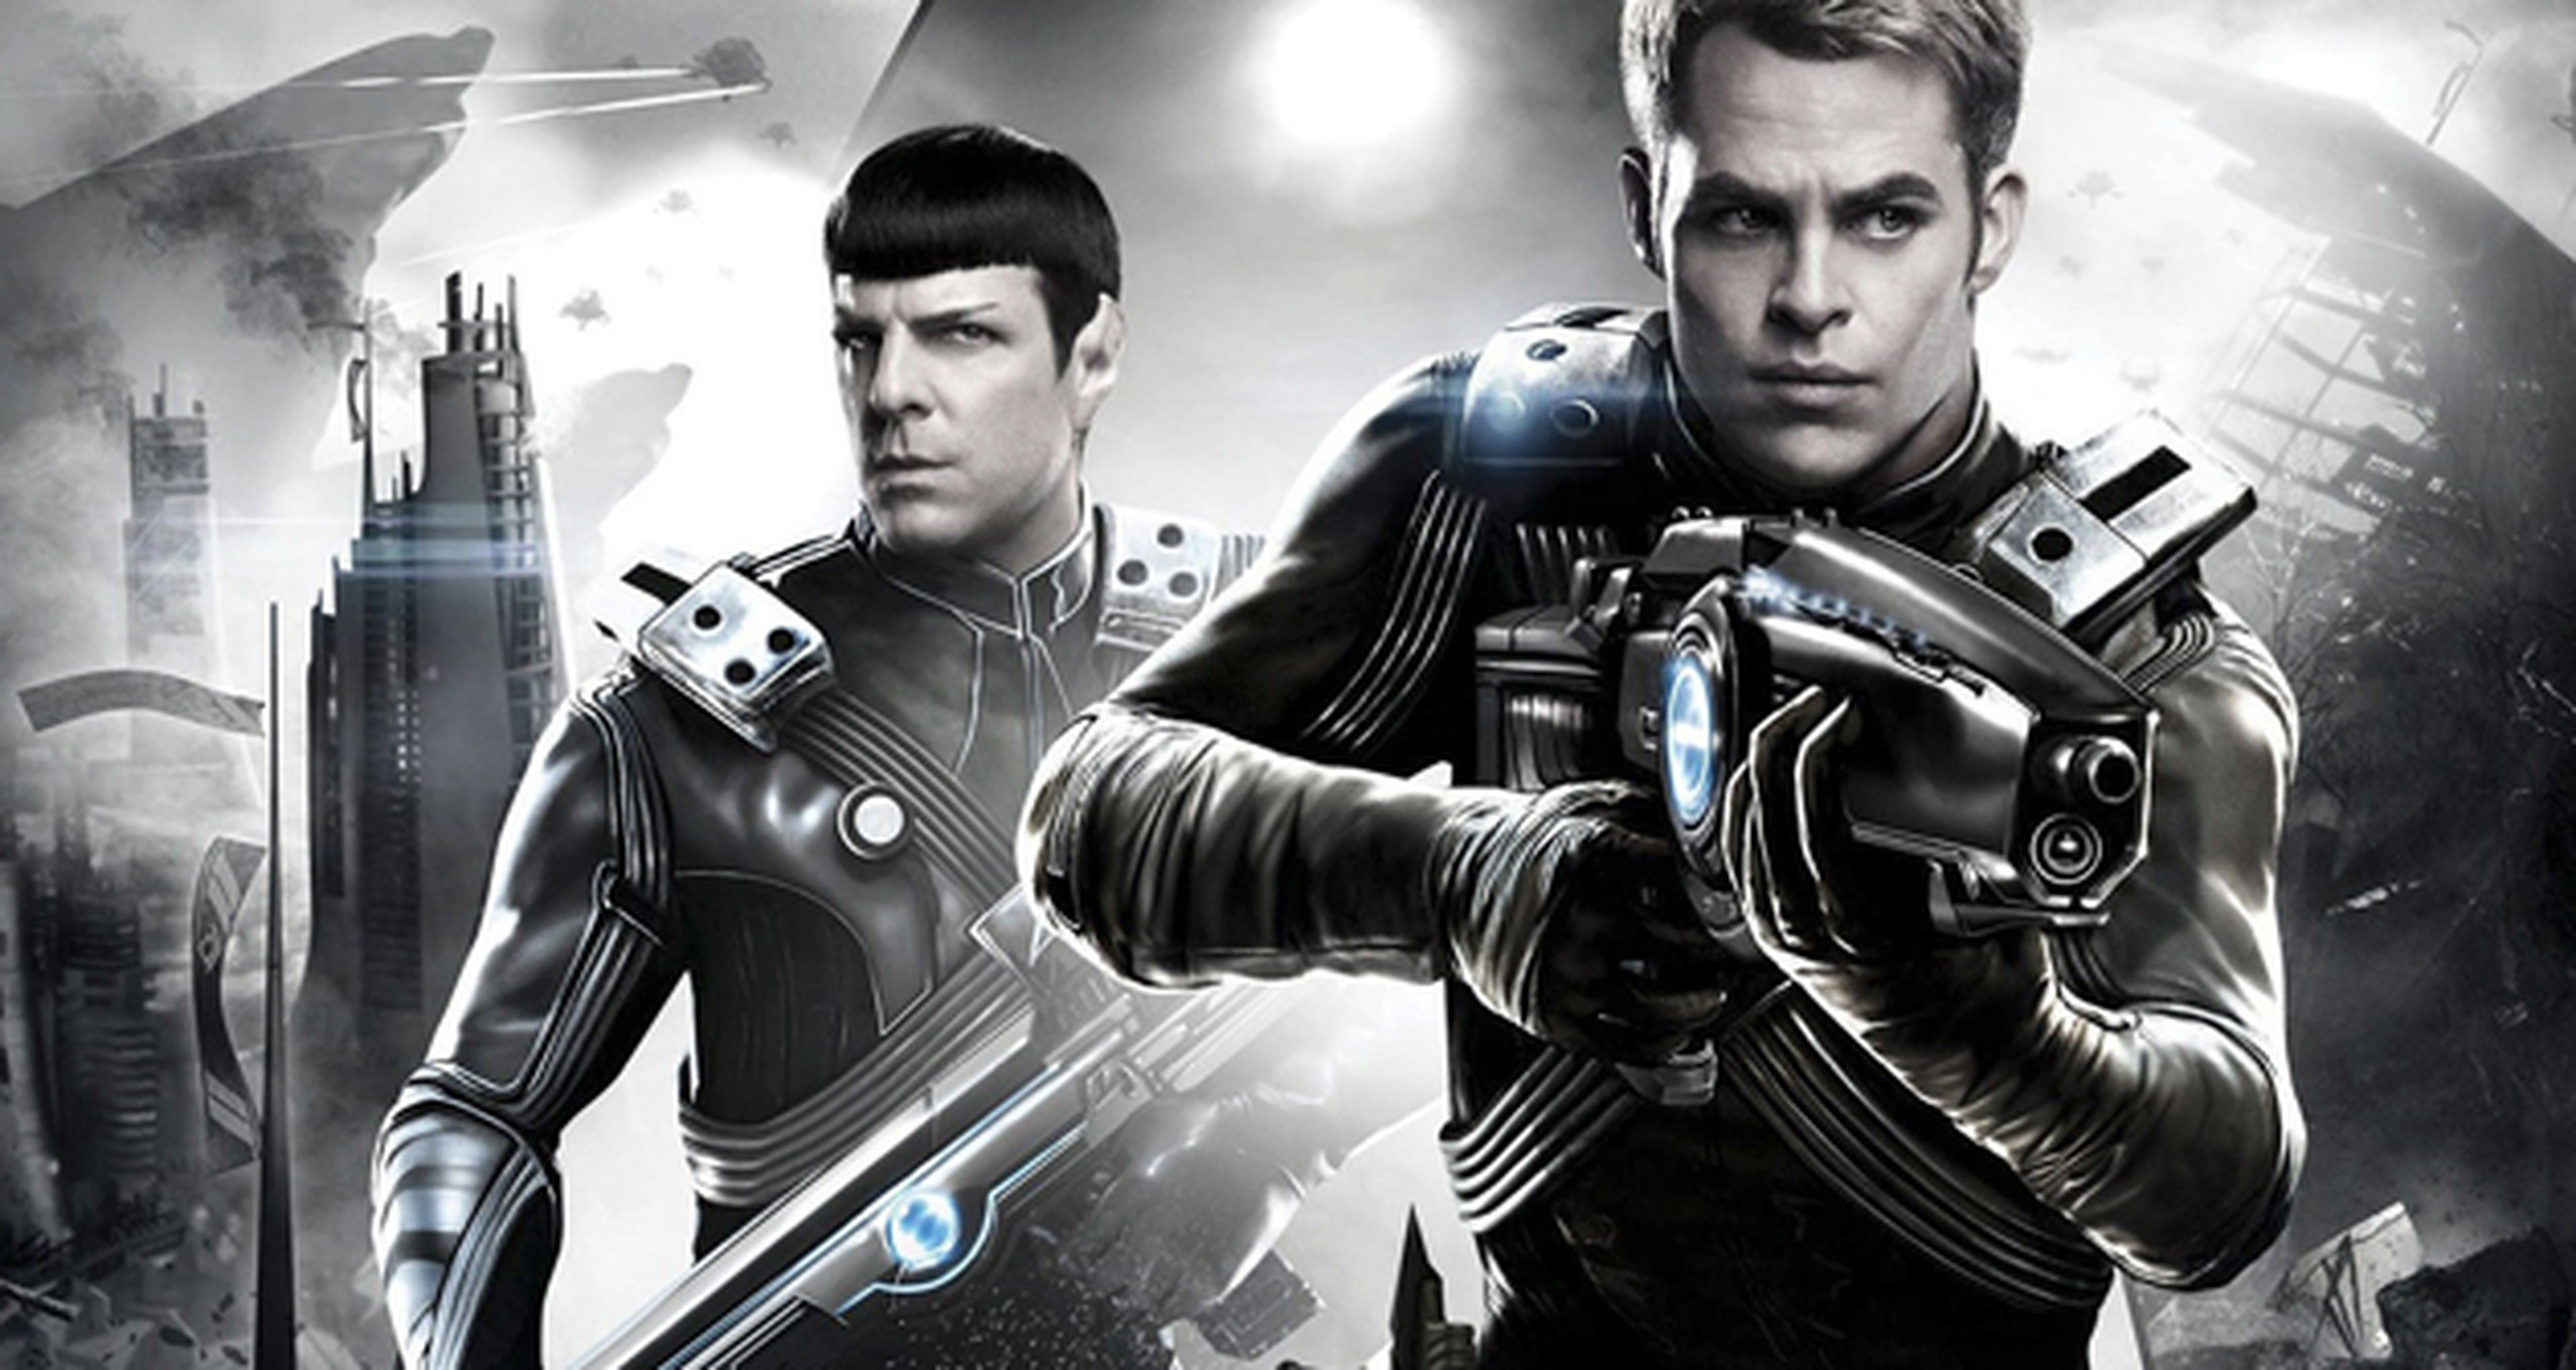 Star Trek: más allá revela las armas y los nuevos uniformes de la tripulación del Enterprise